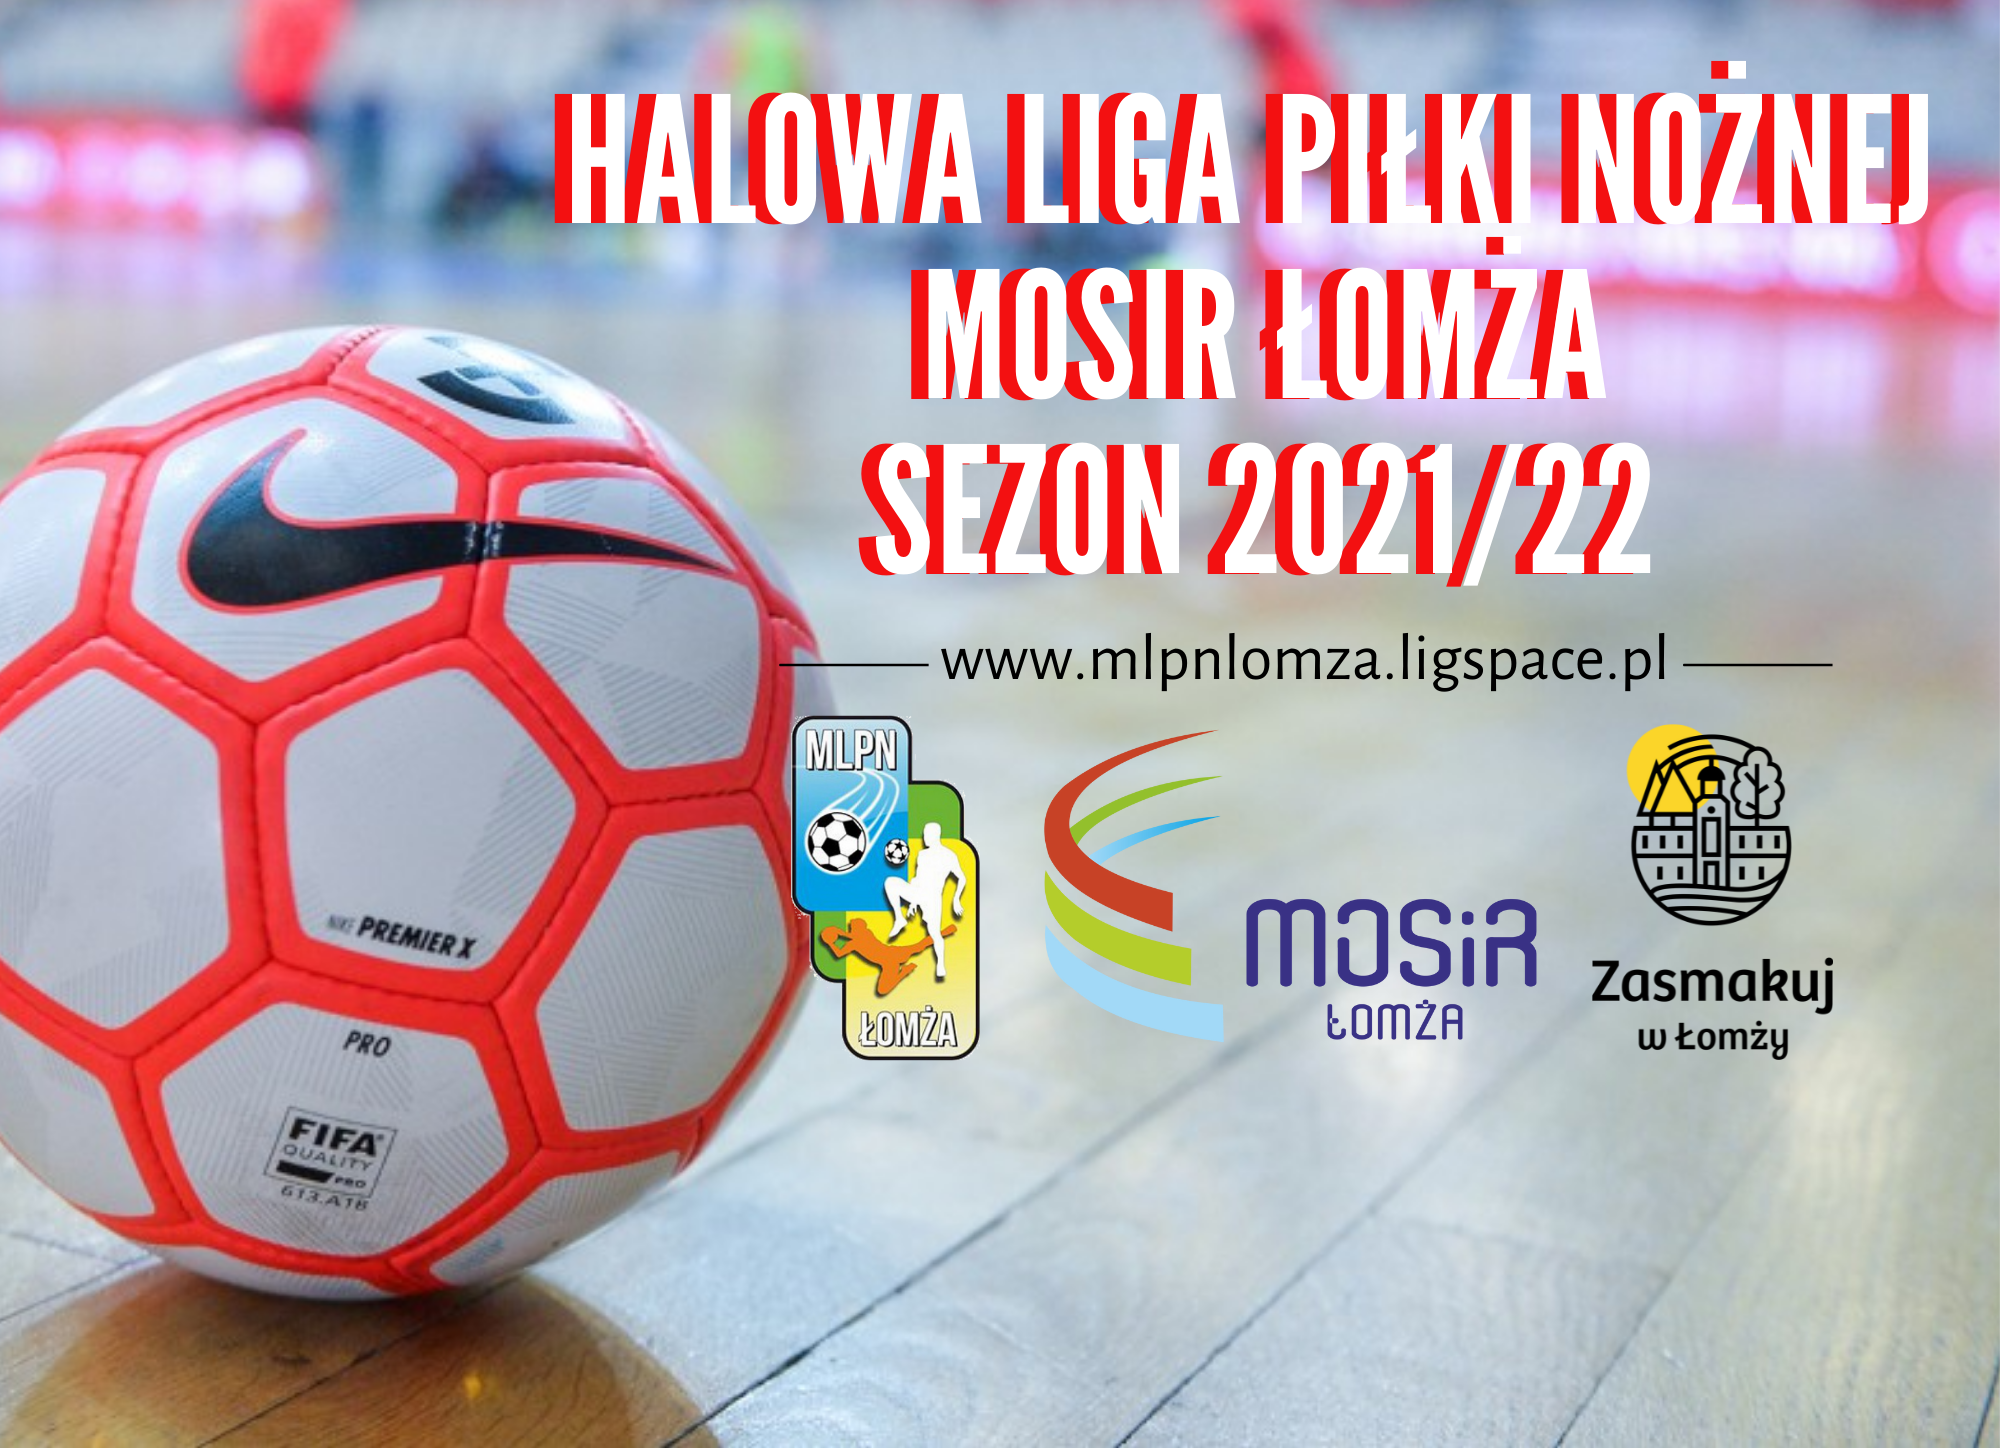 Piłka nike leżąca na boisku halowym. Po prawej stronie biało-czerwony napis Halowa Miejska Liga Piłki Nożnej MOSiR Łomża, pod spodem logotypy ligi, miasta oraz MOSiR Łomża.